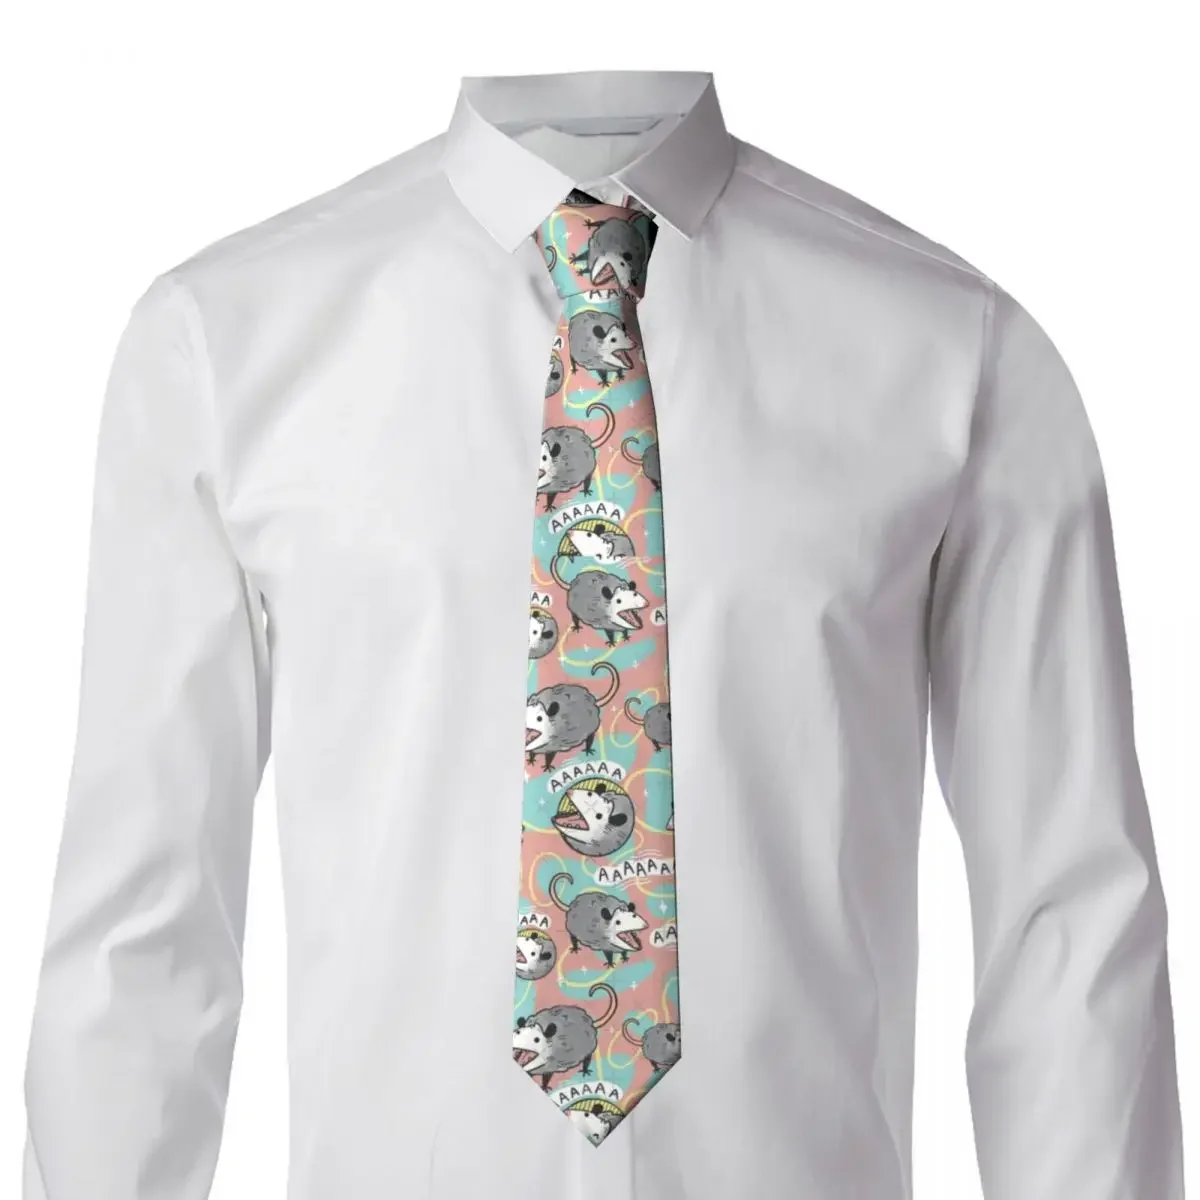 Cartoon Animal Cute Tie Anime Wedding Party Neck Ties Cute Funny Neck Tie For Men Custom DIY Collar Tie Necktie Gift